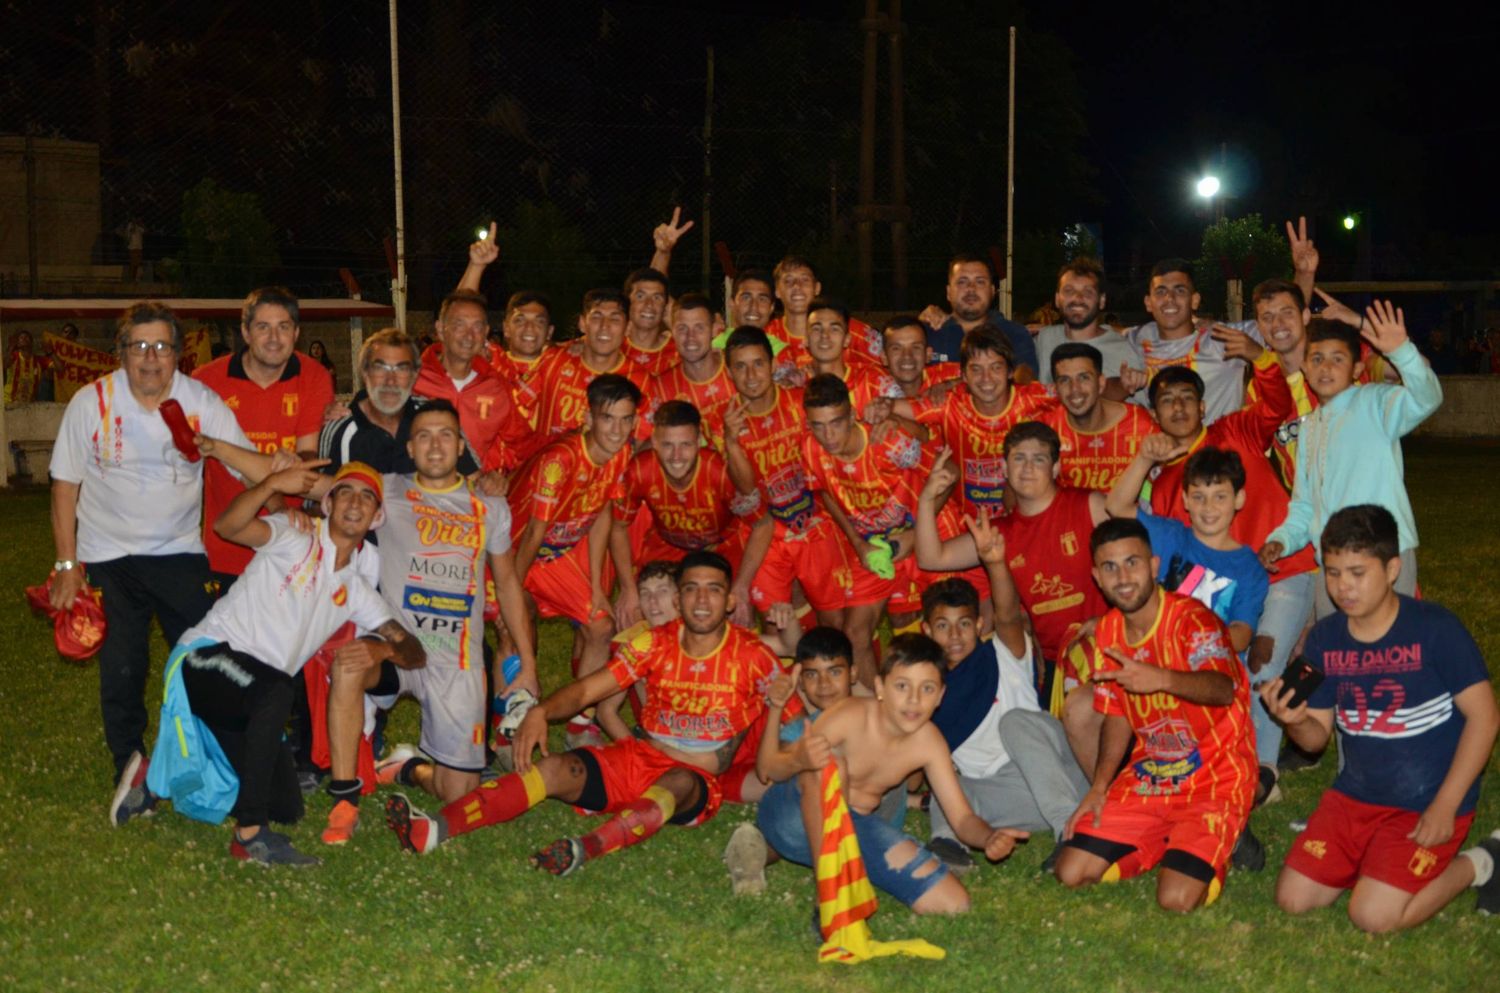 Barracas superó otra vez a Paraná y gritó campeón del Torneo de Clubes 2020 en San Pedro